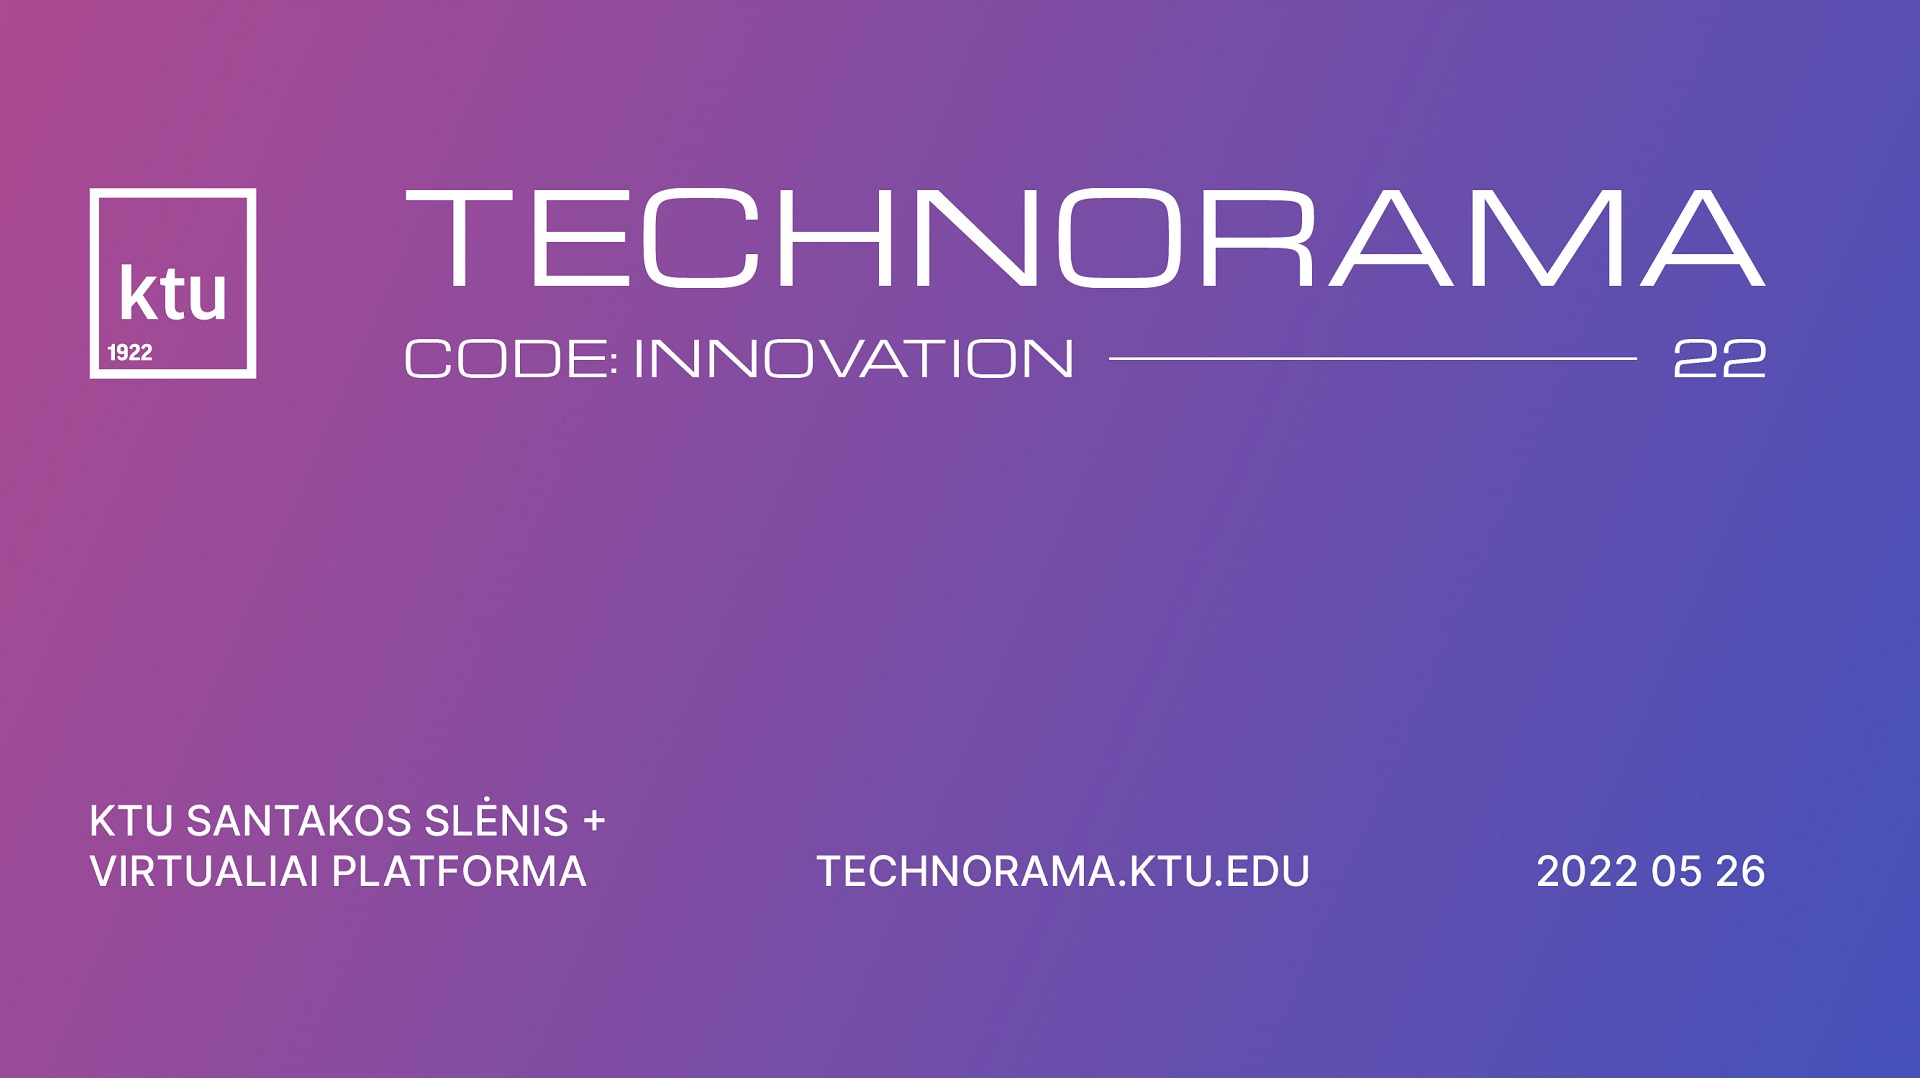 Technorama 2022 conference